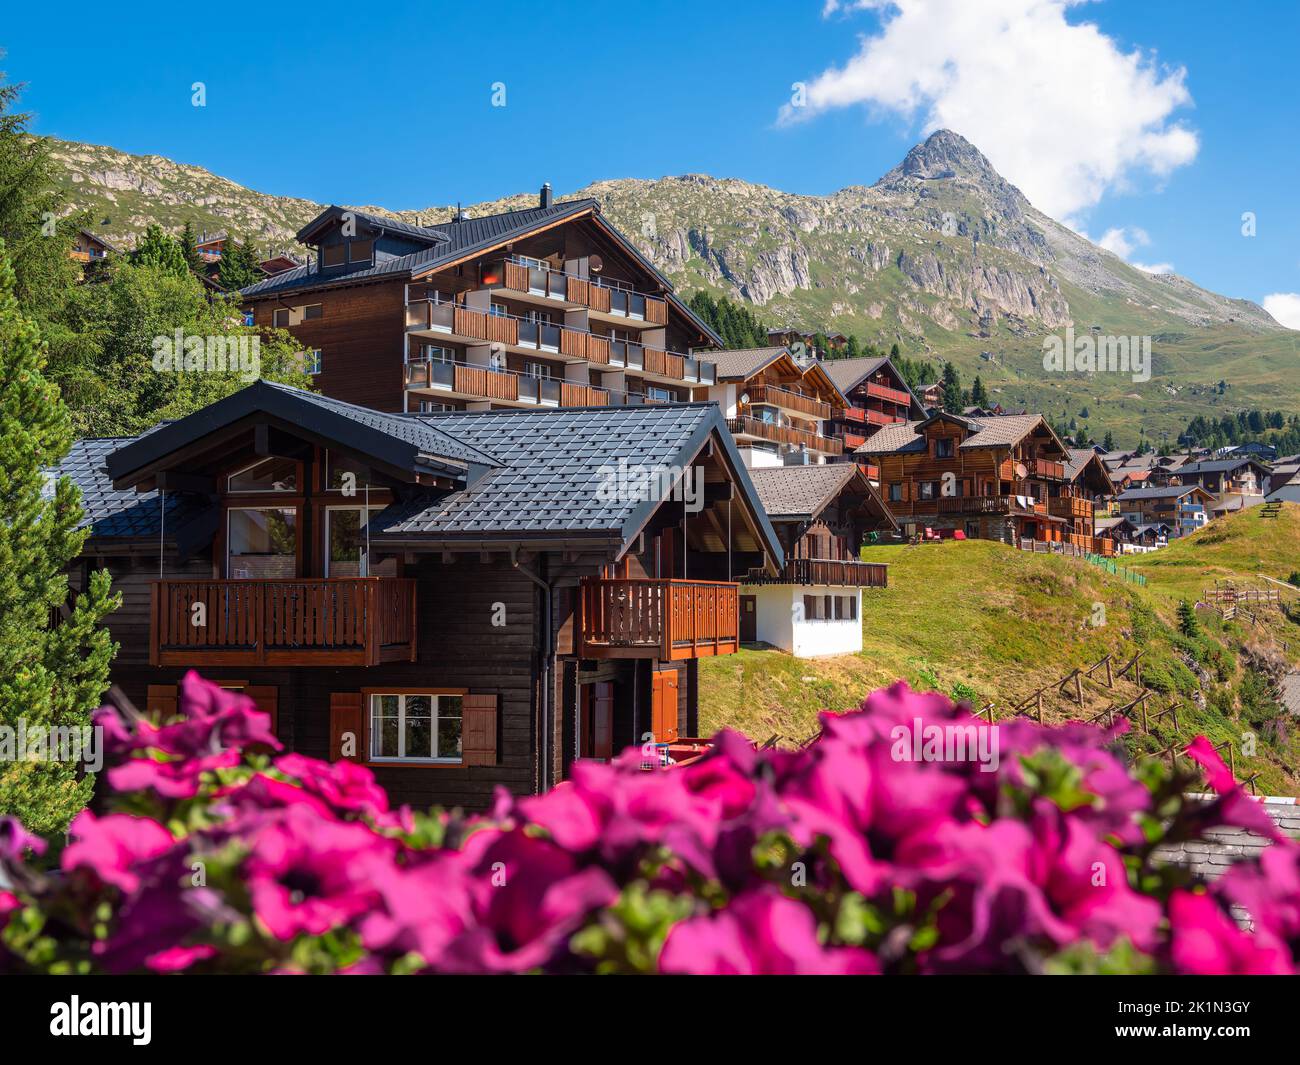 L'idilliaco centro turistico di Bettmeralp si trova nelle Alpi Bernesi, sul versante settentrionale della Valle del Rodano, nell'Alto Vallese in Svizzera Foto Stock